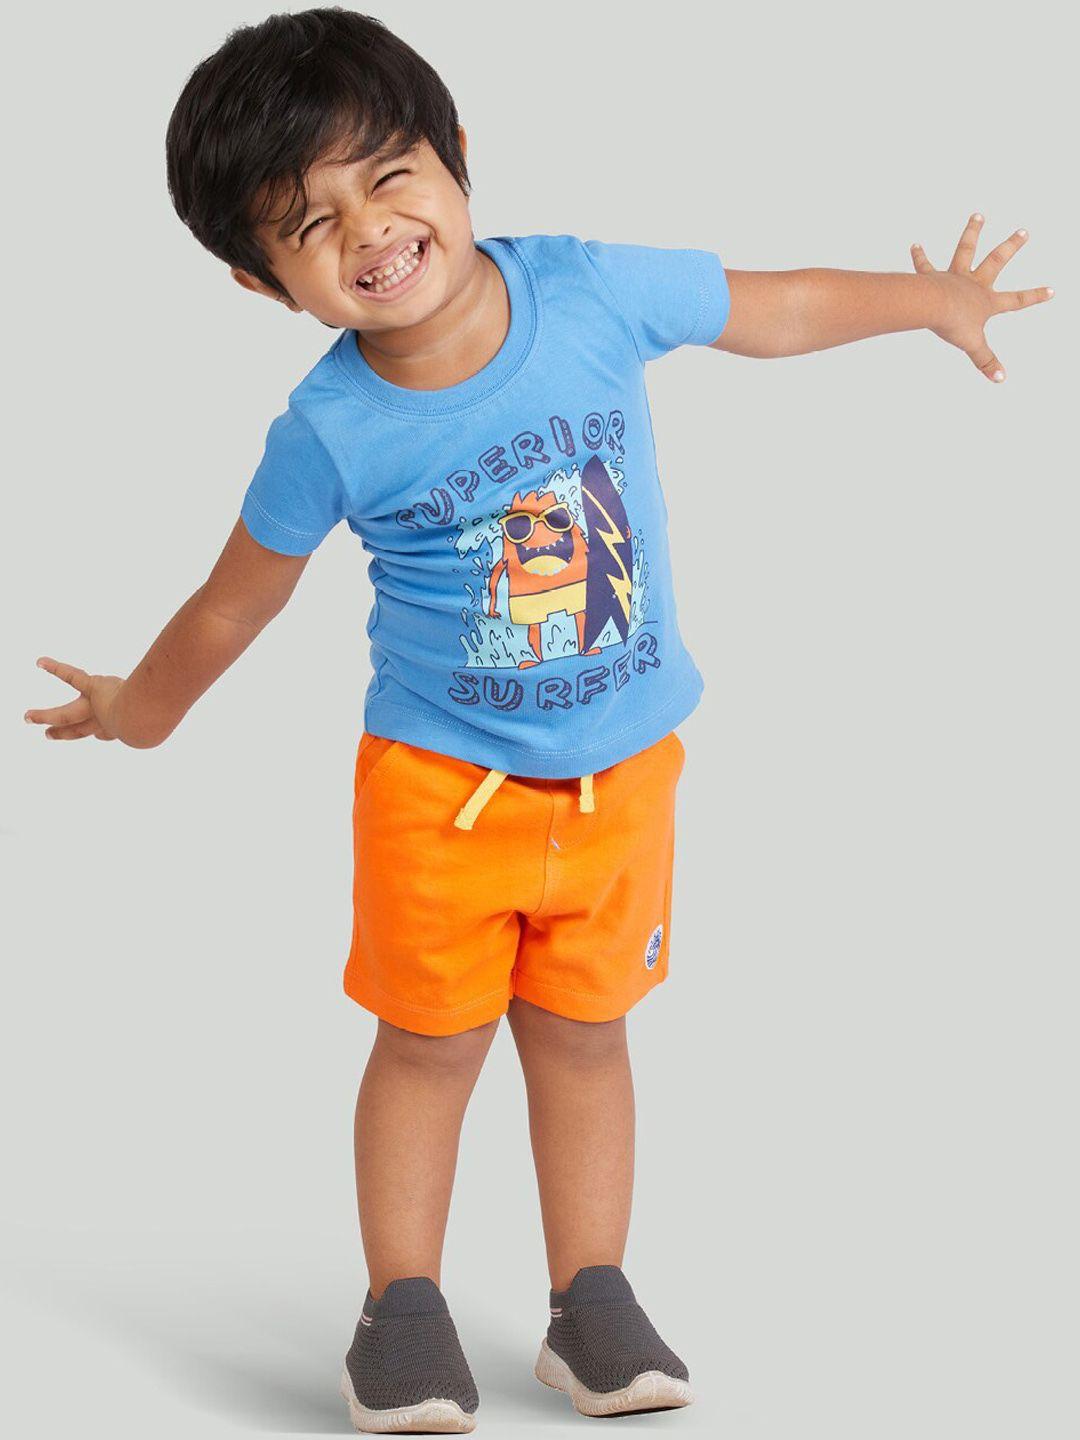 zalio boys turquoise blue & orange printed t-shirt with shorts